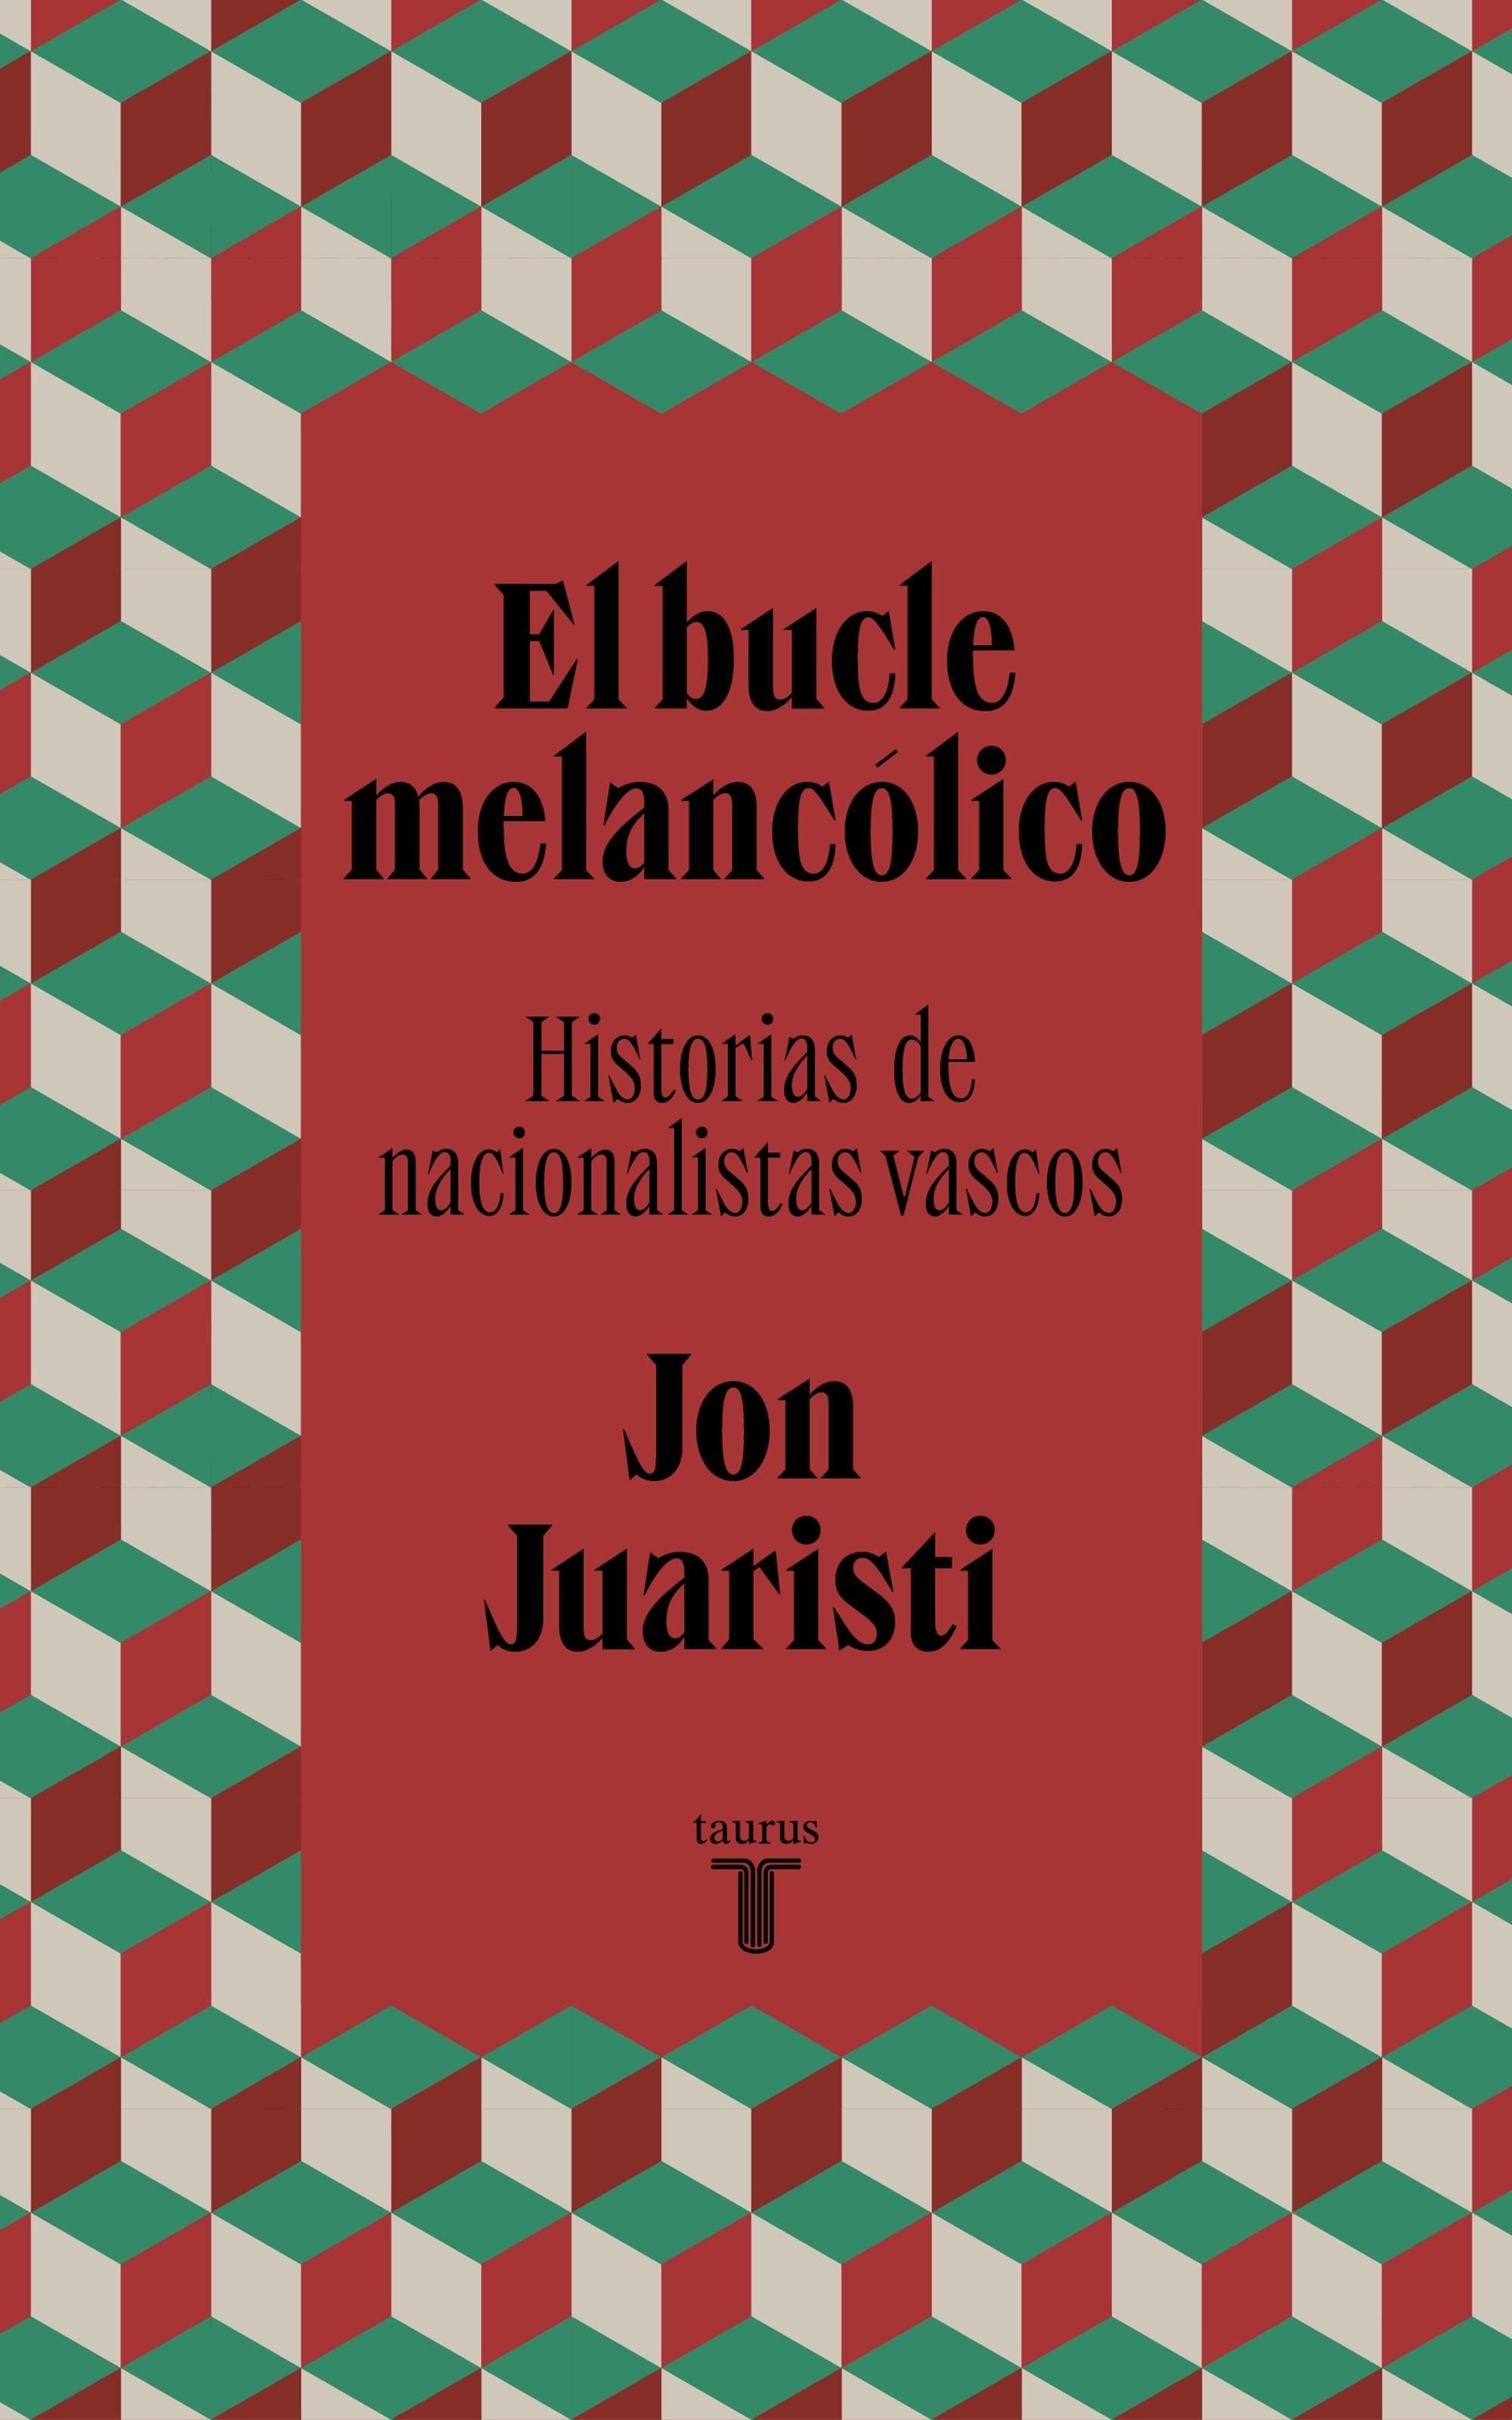 El bucle melancólico "Historias de nacionalistas vascos"